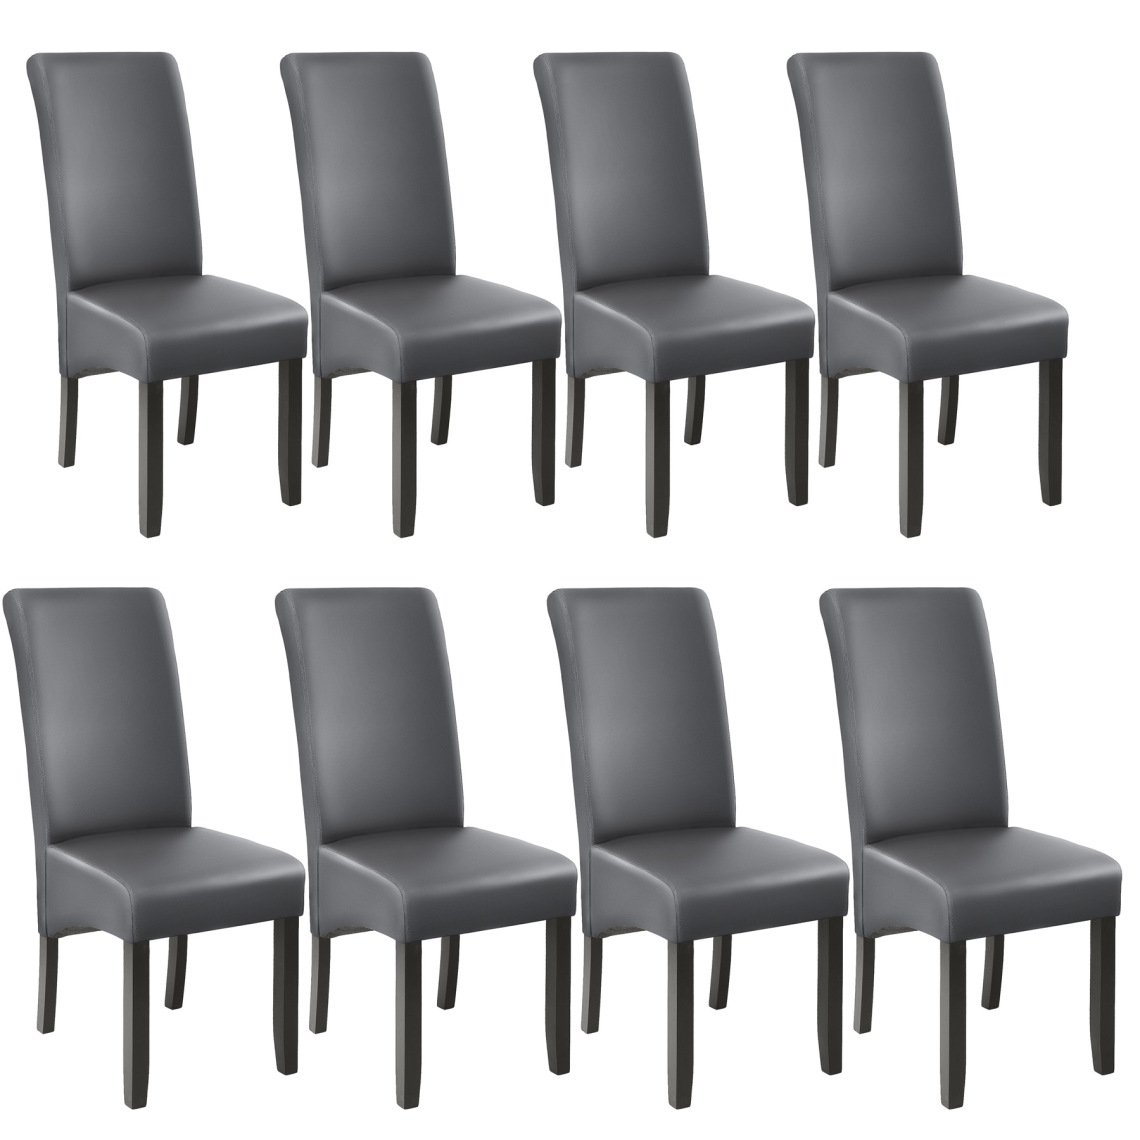 Tectake - Lot de 8 chaises aspect cuir - gris - Chaises